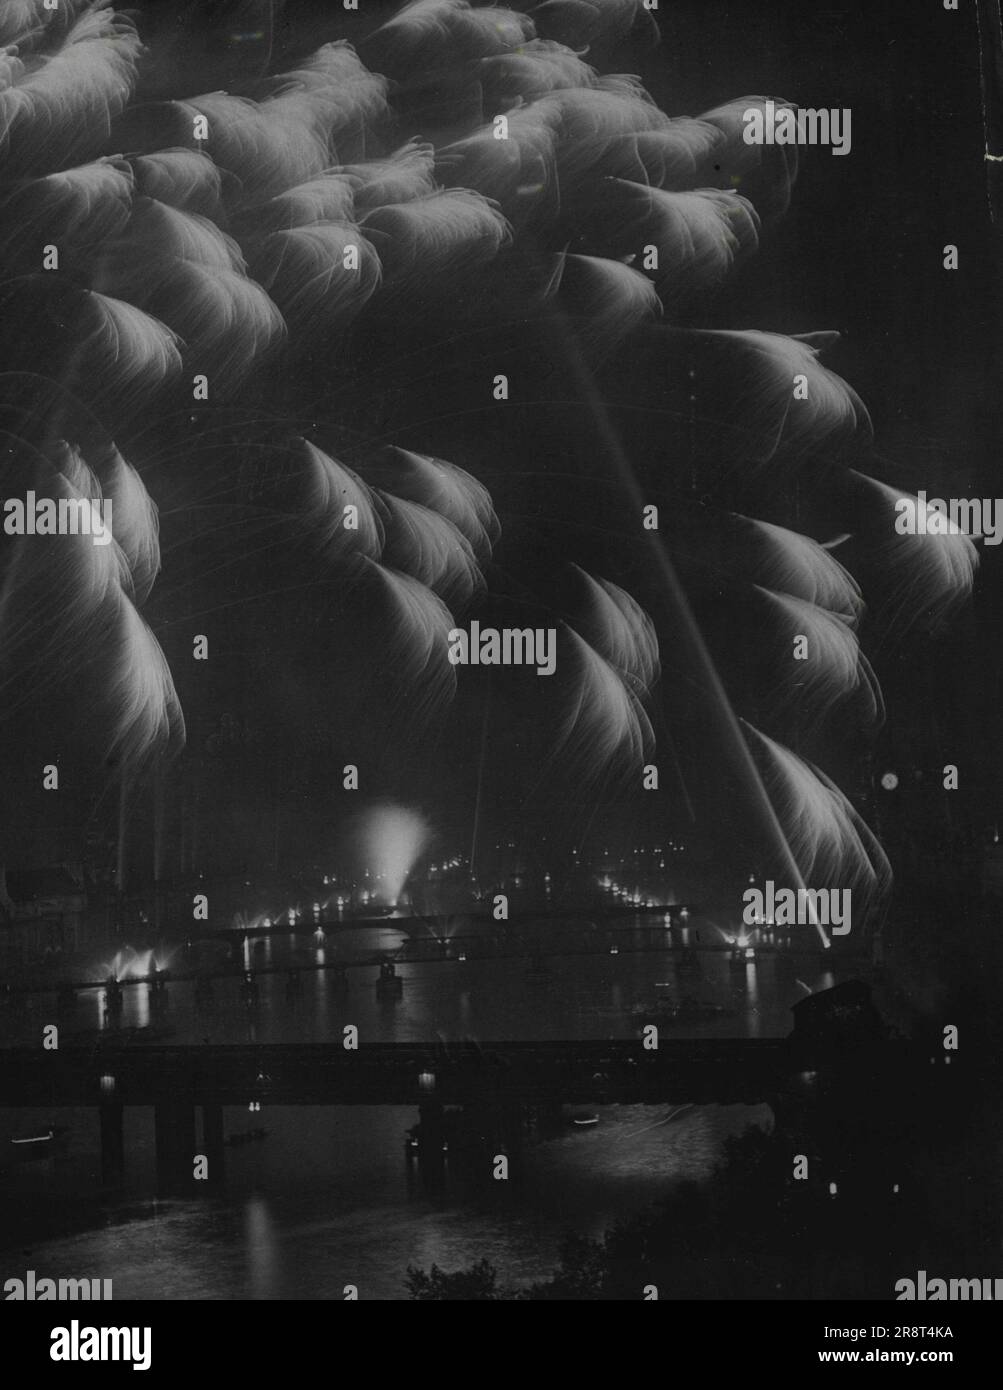 Victory Pageant am London River -- die Aussicht von der Spitze des Shell-Mex House. Fetzen von Akten erhellen den Fluss, während Suchlichter den Himmel erhellen. Die königliche Familie mit Tausenden von ihren Leuten kam zur Nacht, der Siegessnacht, zur größten Feuerwerkskörper und Suchscheinwerfer-Ausstellung auf dem Fluss zwischen den Brücken Hingerford und Vauxhall. 08. Juni 1946. (Foto von Reuterphoto). Stockfoto